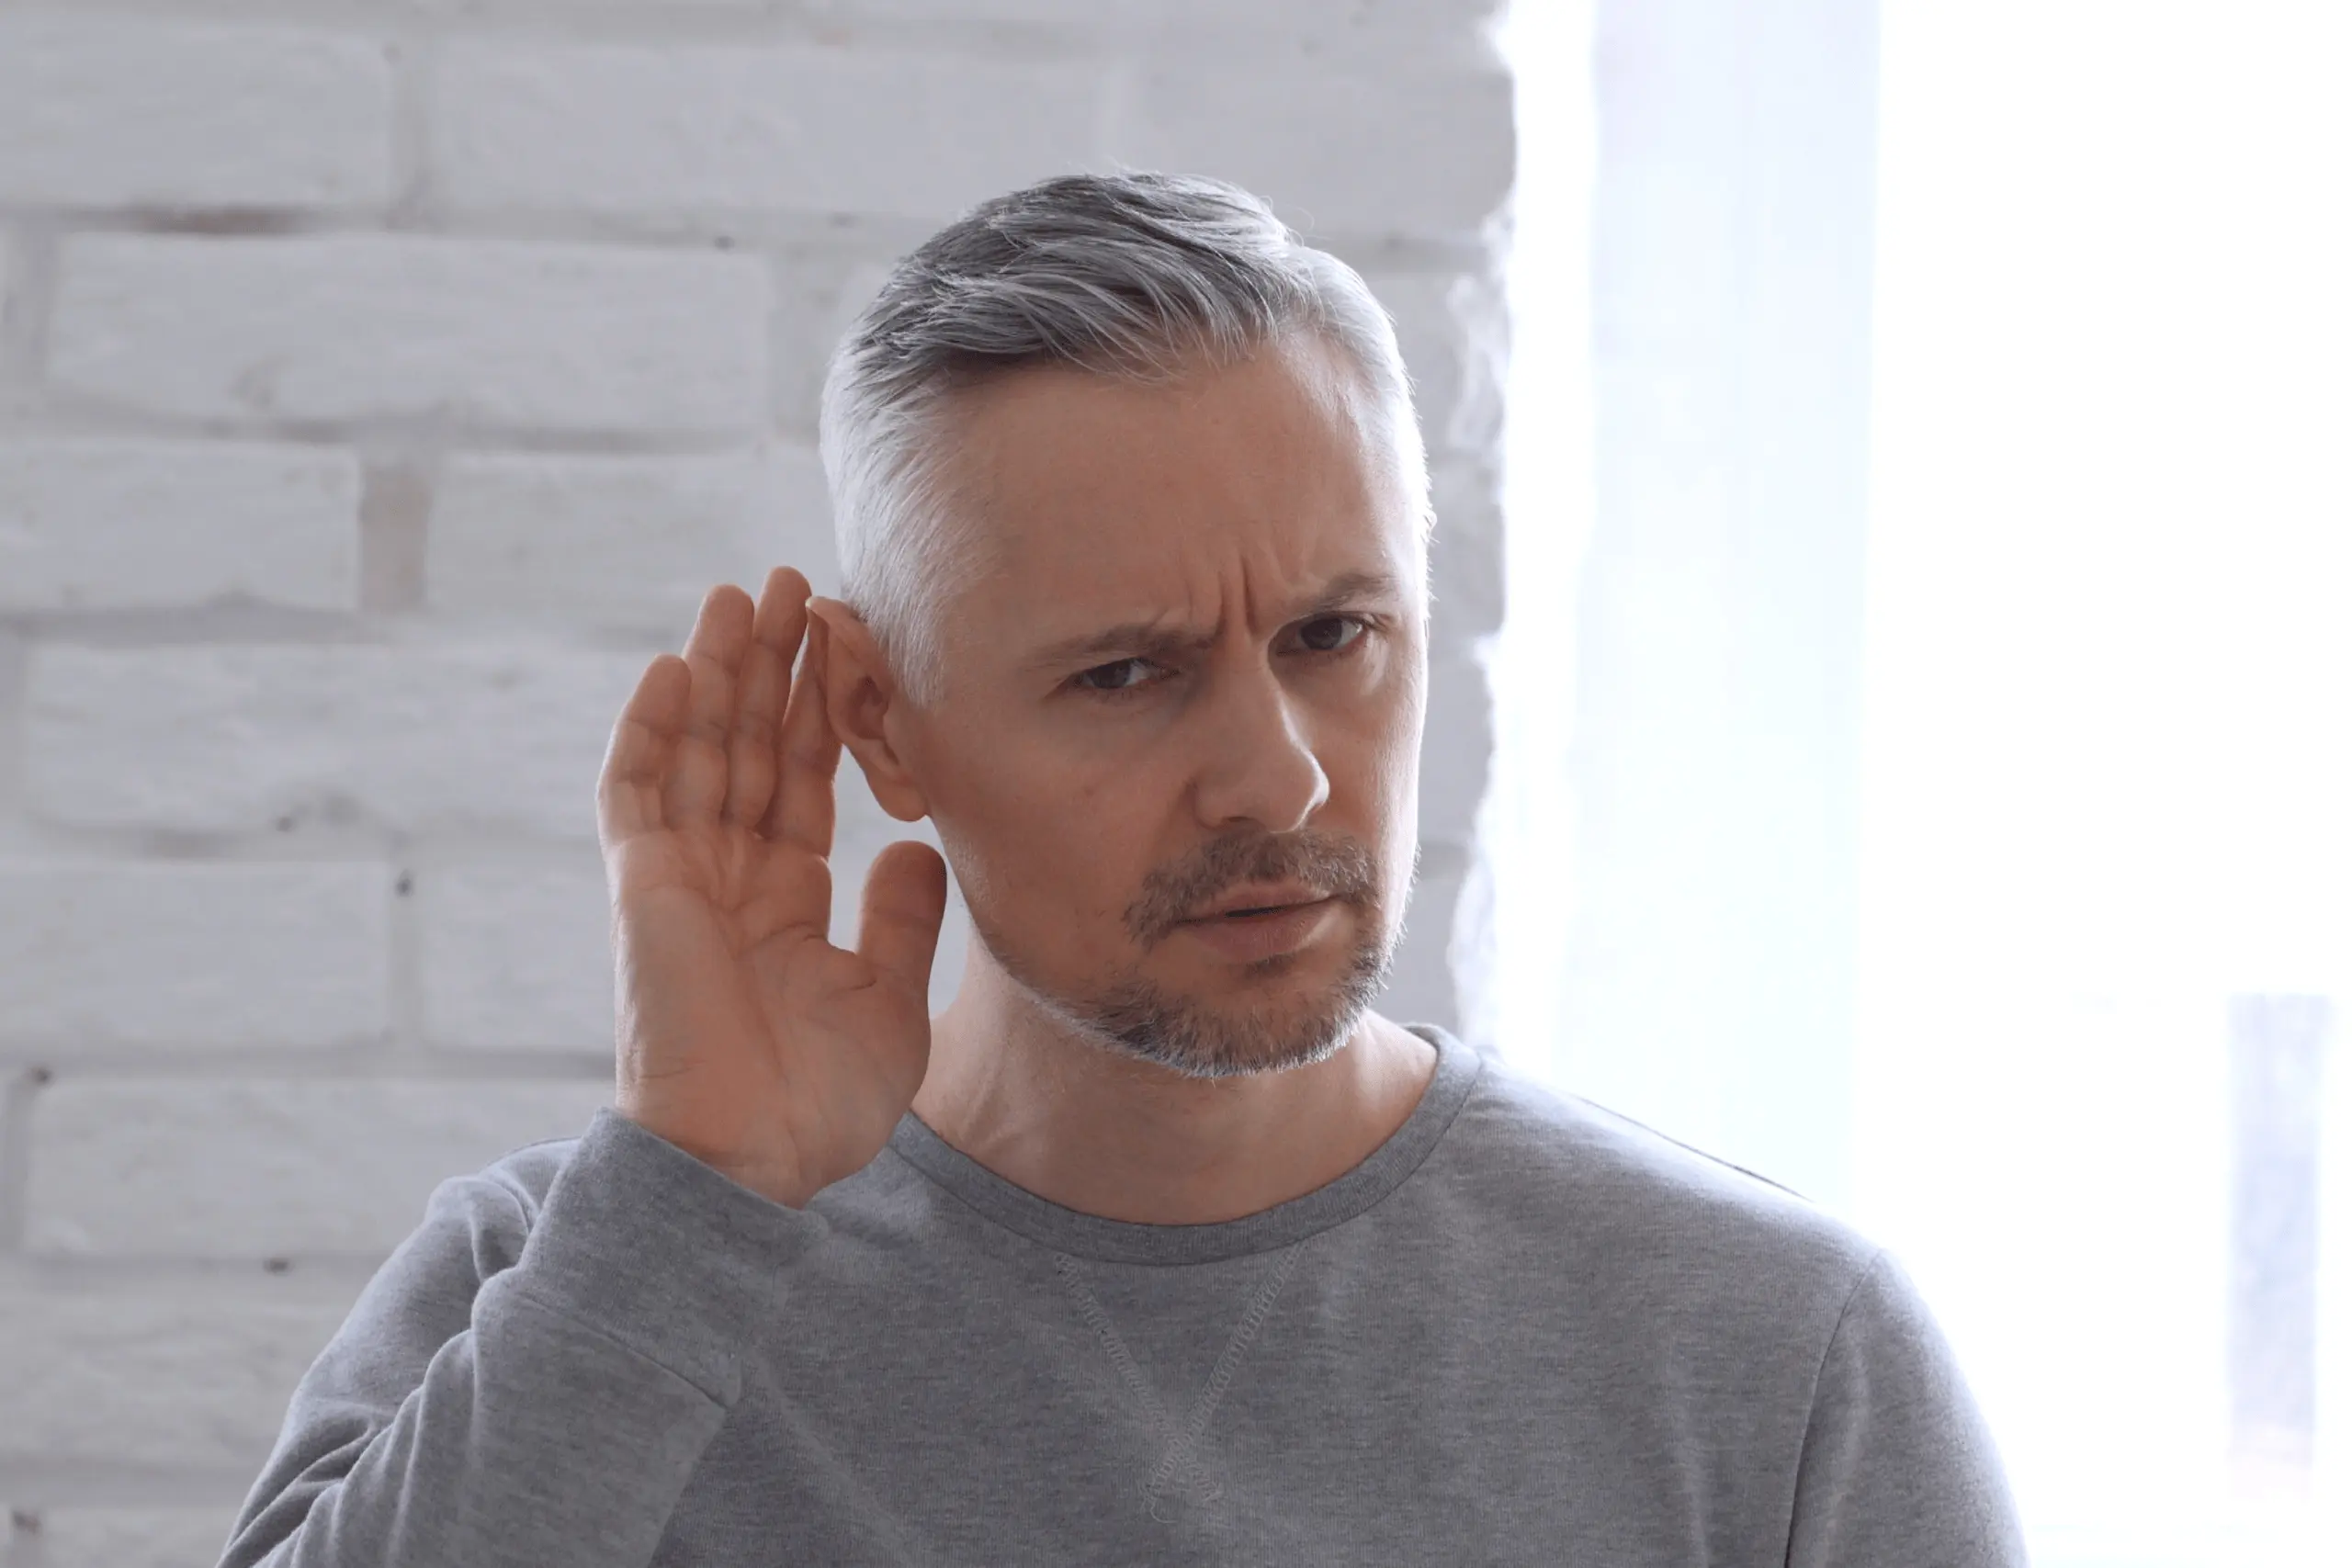 Marmed - Aparaty Słuchowe - Badanie Słuchu - Zapalenie błędnika